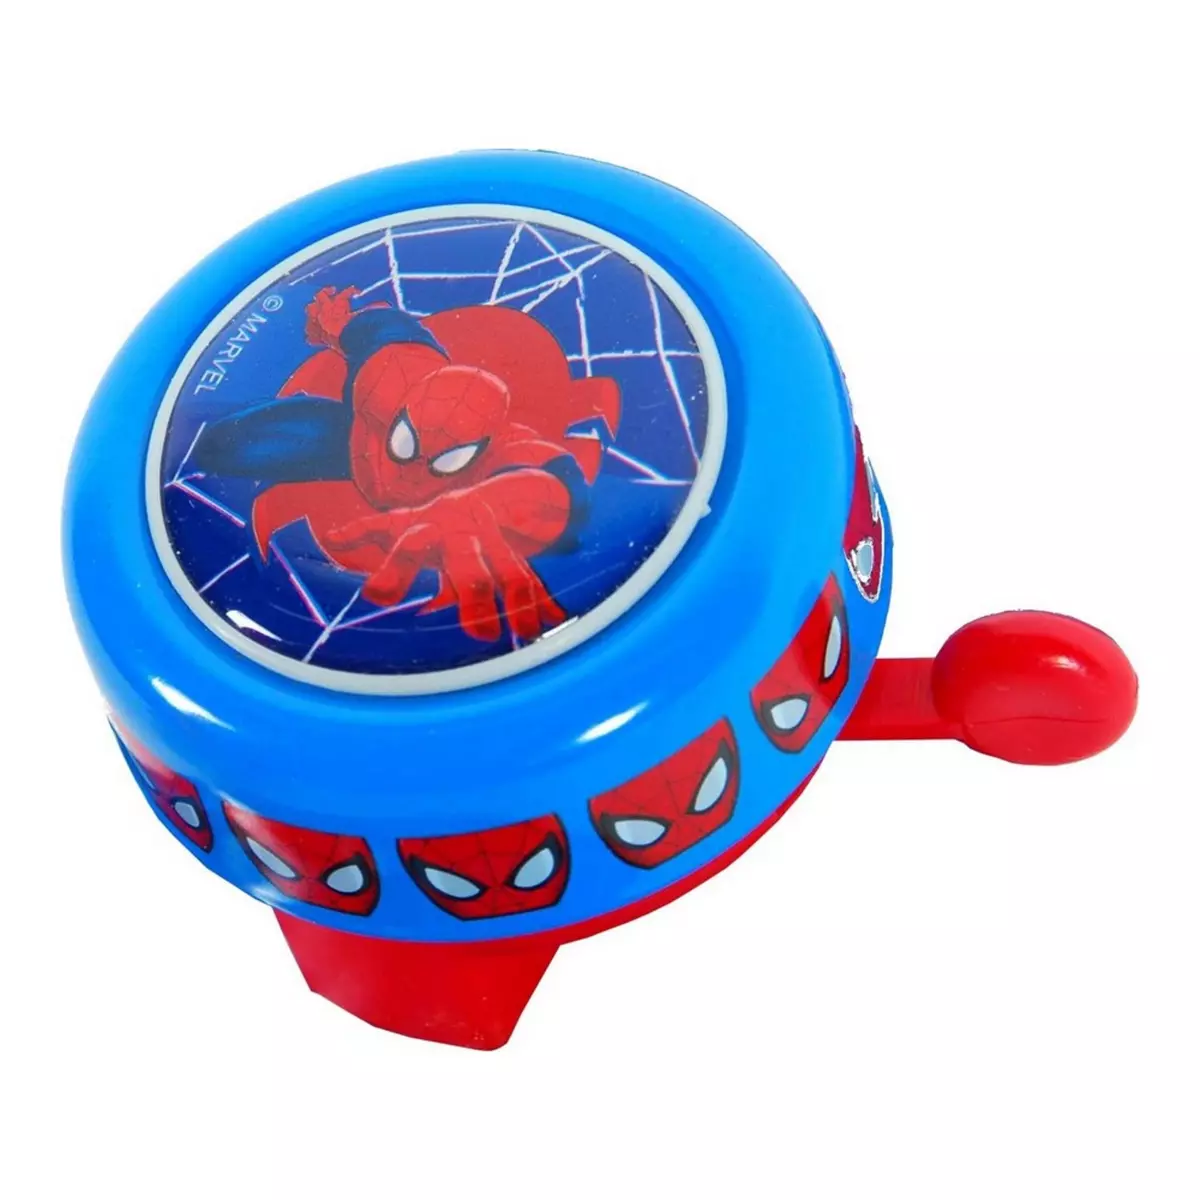  Sonnette metal ronde Spiderman, velo enfant new